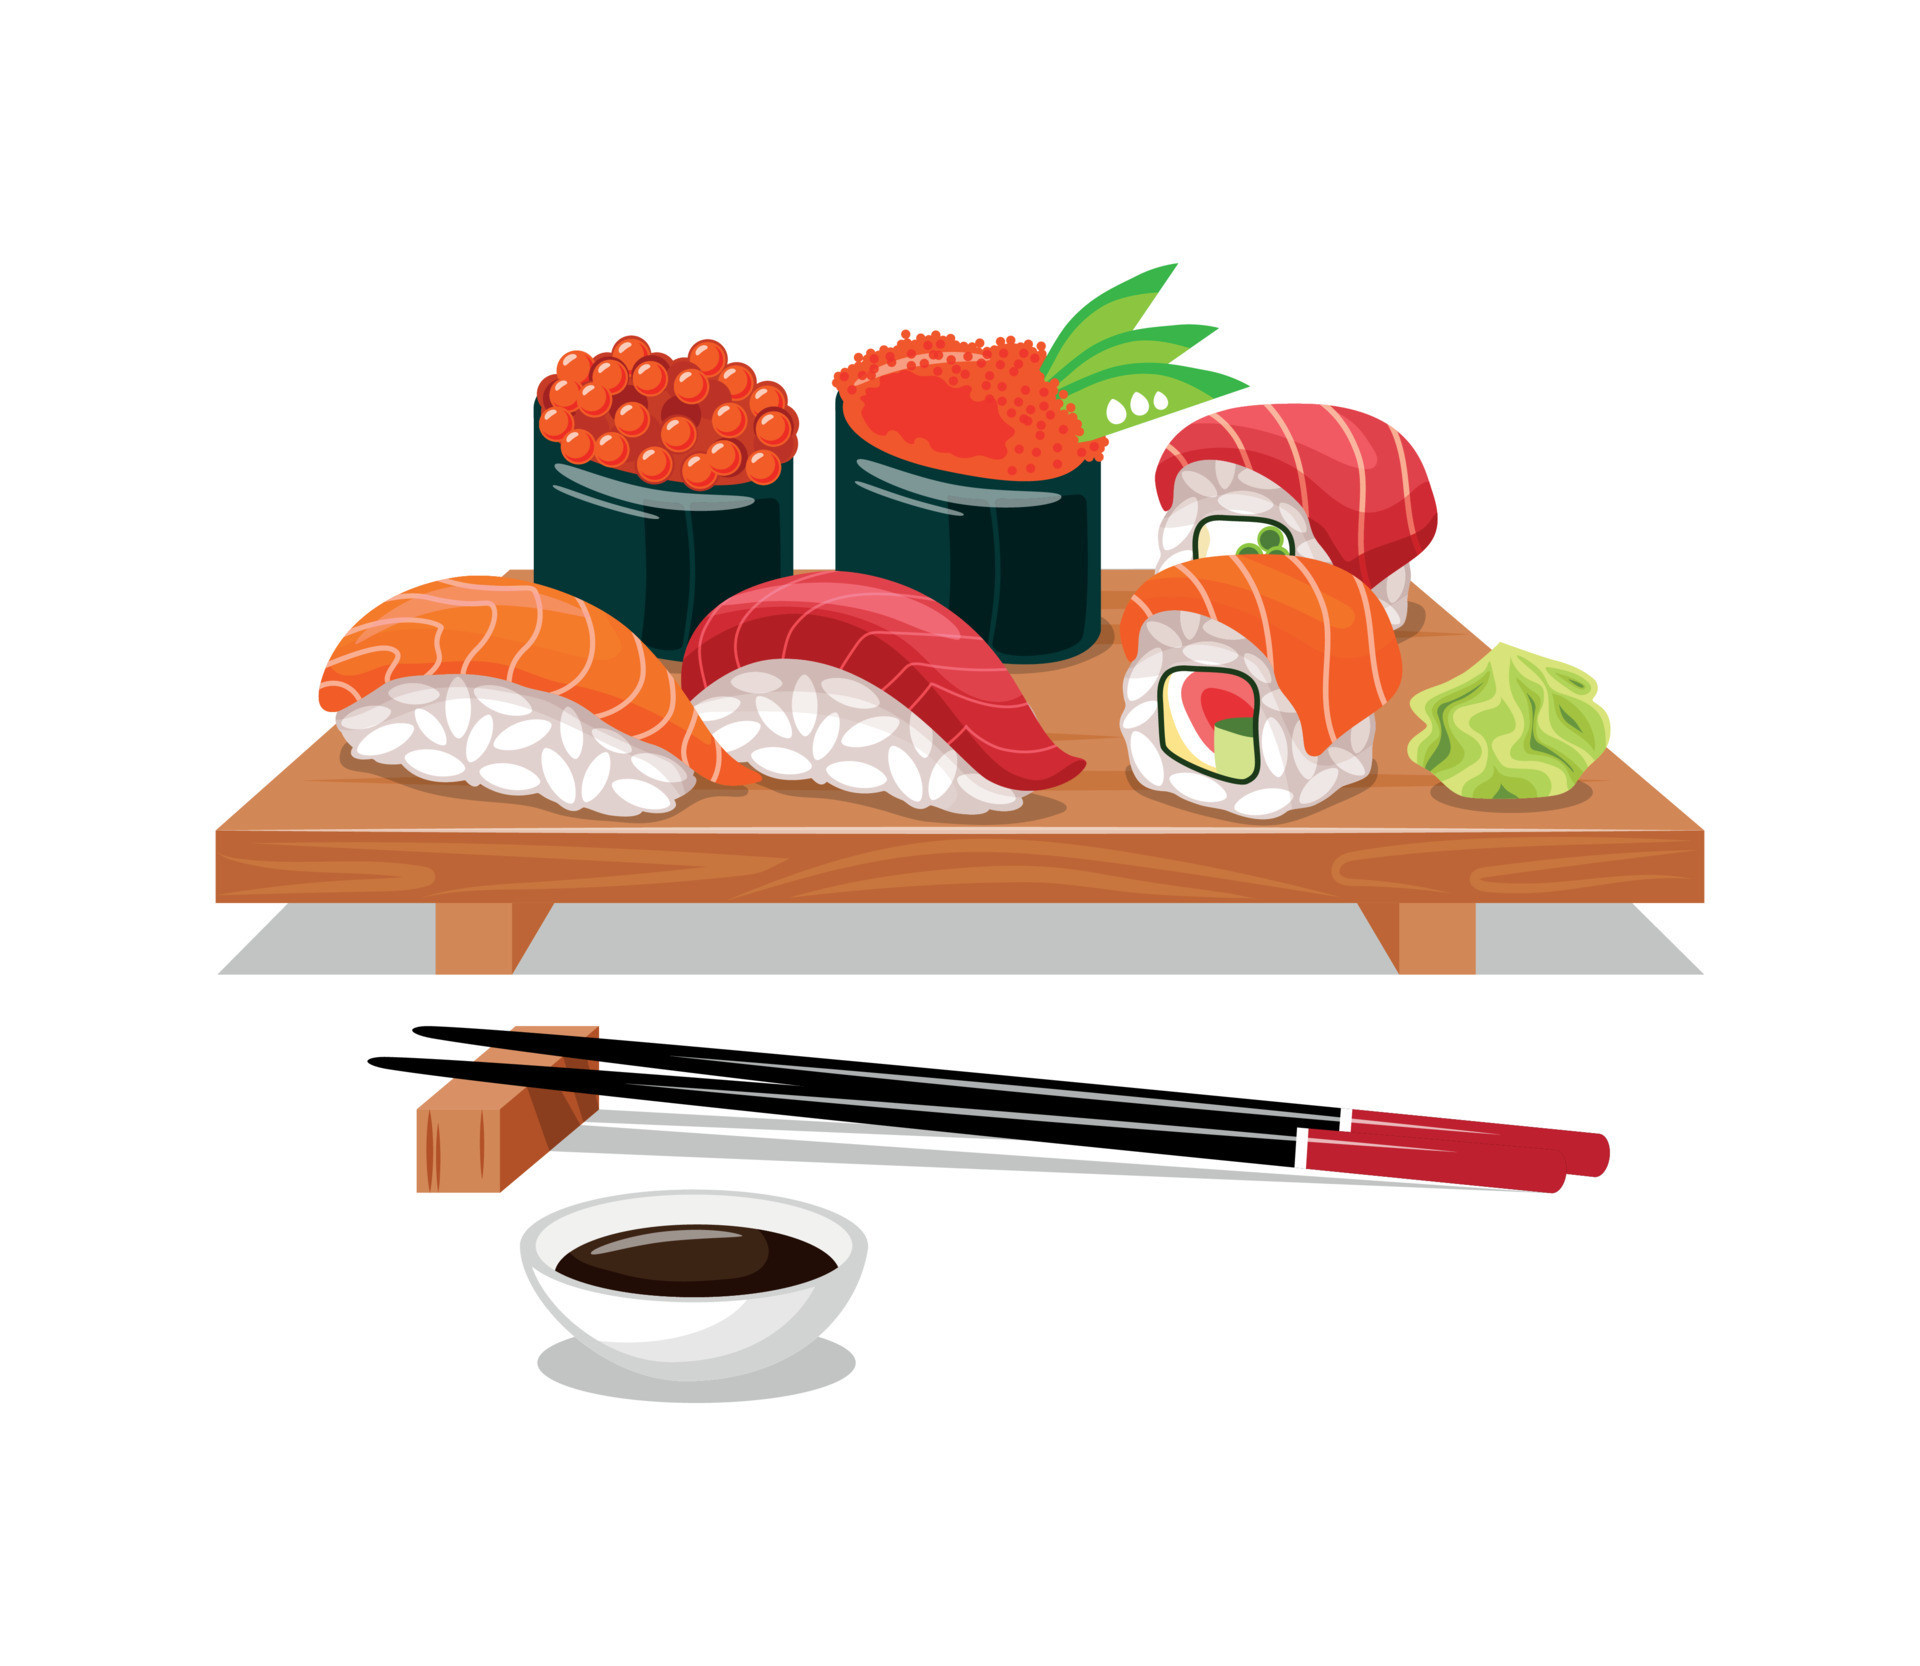 nourriture asiatique. un ensemble de sushis sur une assiette en bois  traditionnelle et un ensemble de baguettes. sushi, rouleaux, nigiri,  goukans, sauce, wasabi. fond blanc, objet isolé. concept de menu et affiche